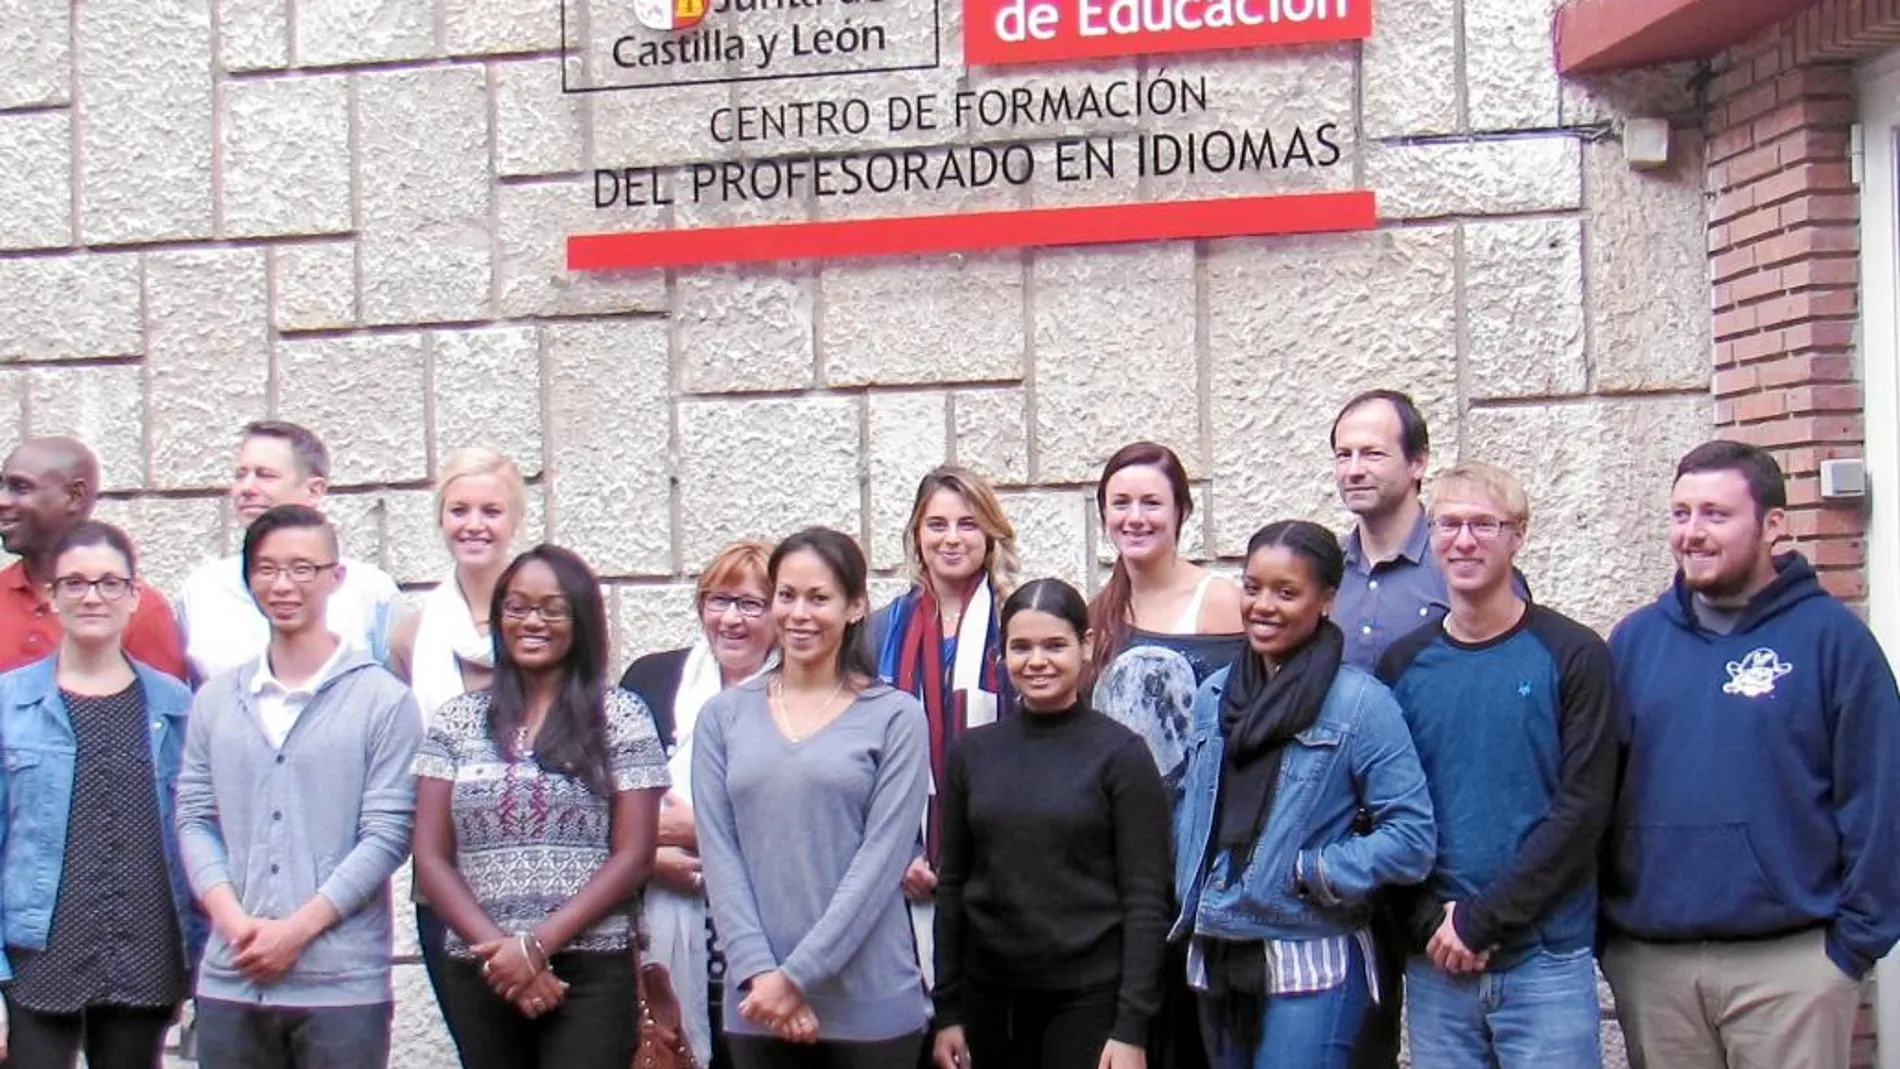 Colaboradores extranjeros que participan en los distintos programas de idiomas de la Junta